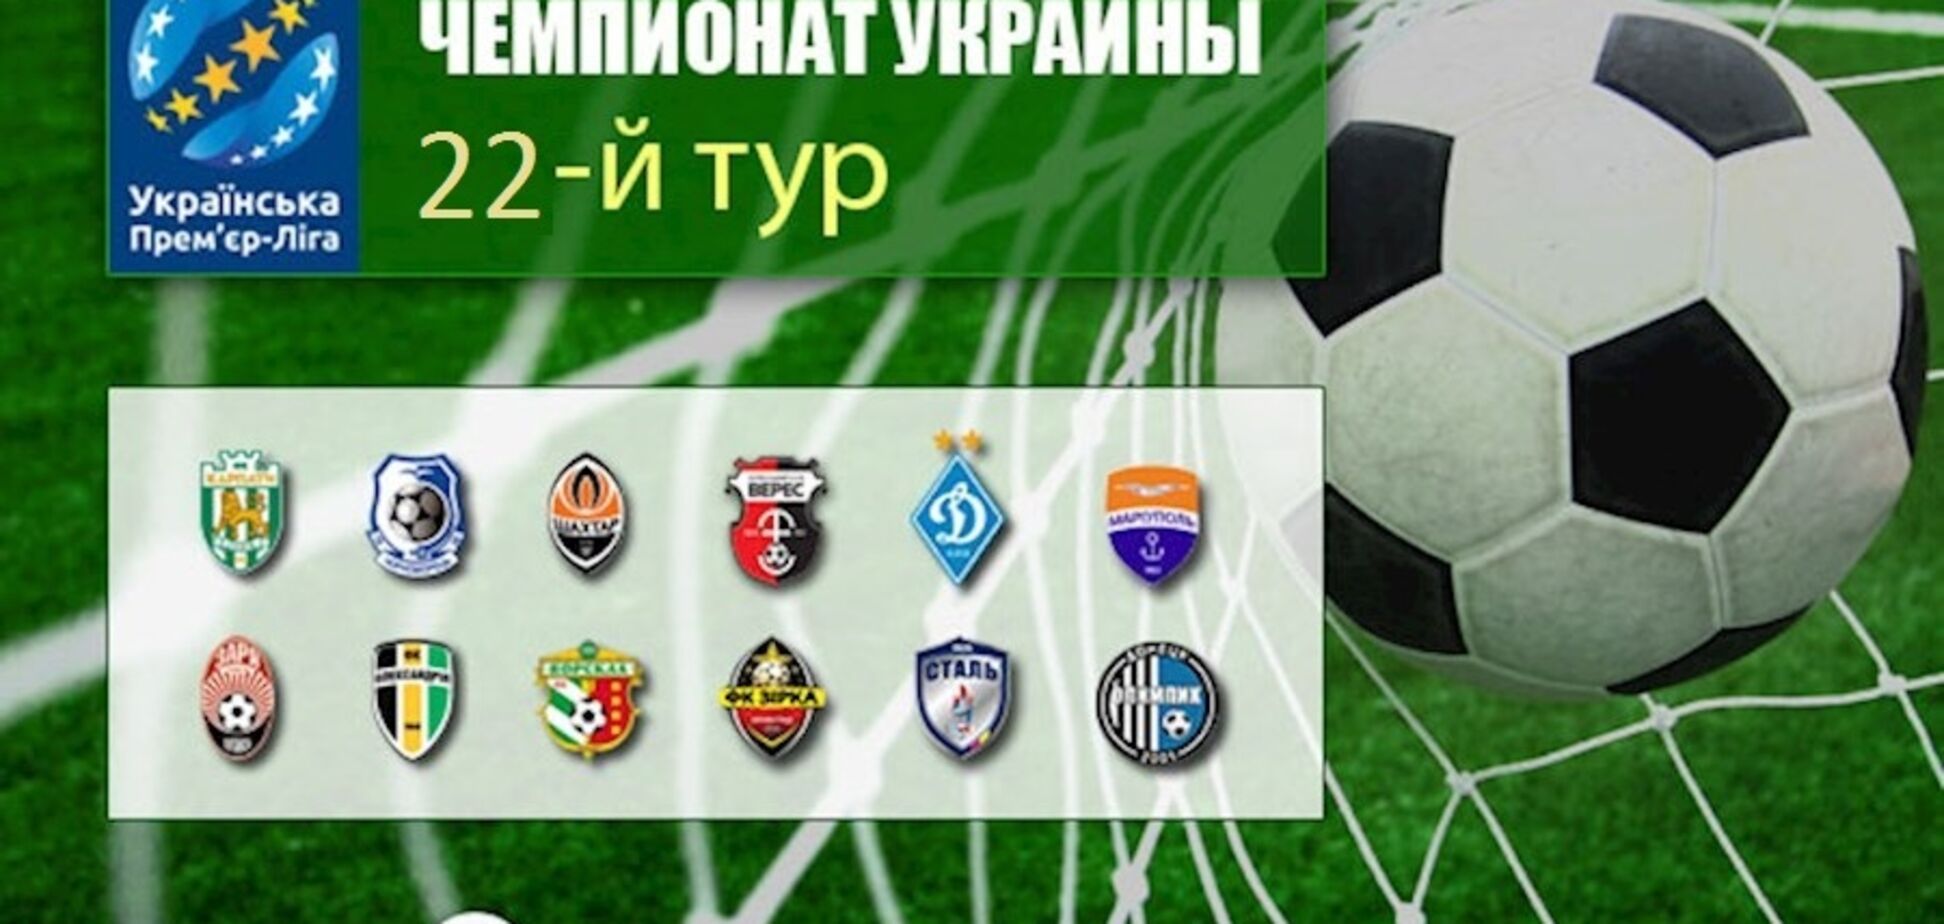 22-й тур чемпіонату України з футболу: результати, огляди матчів